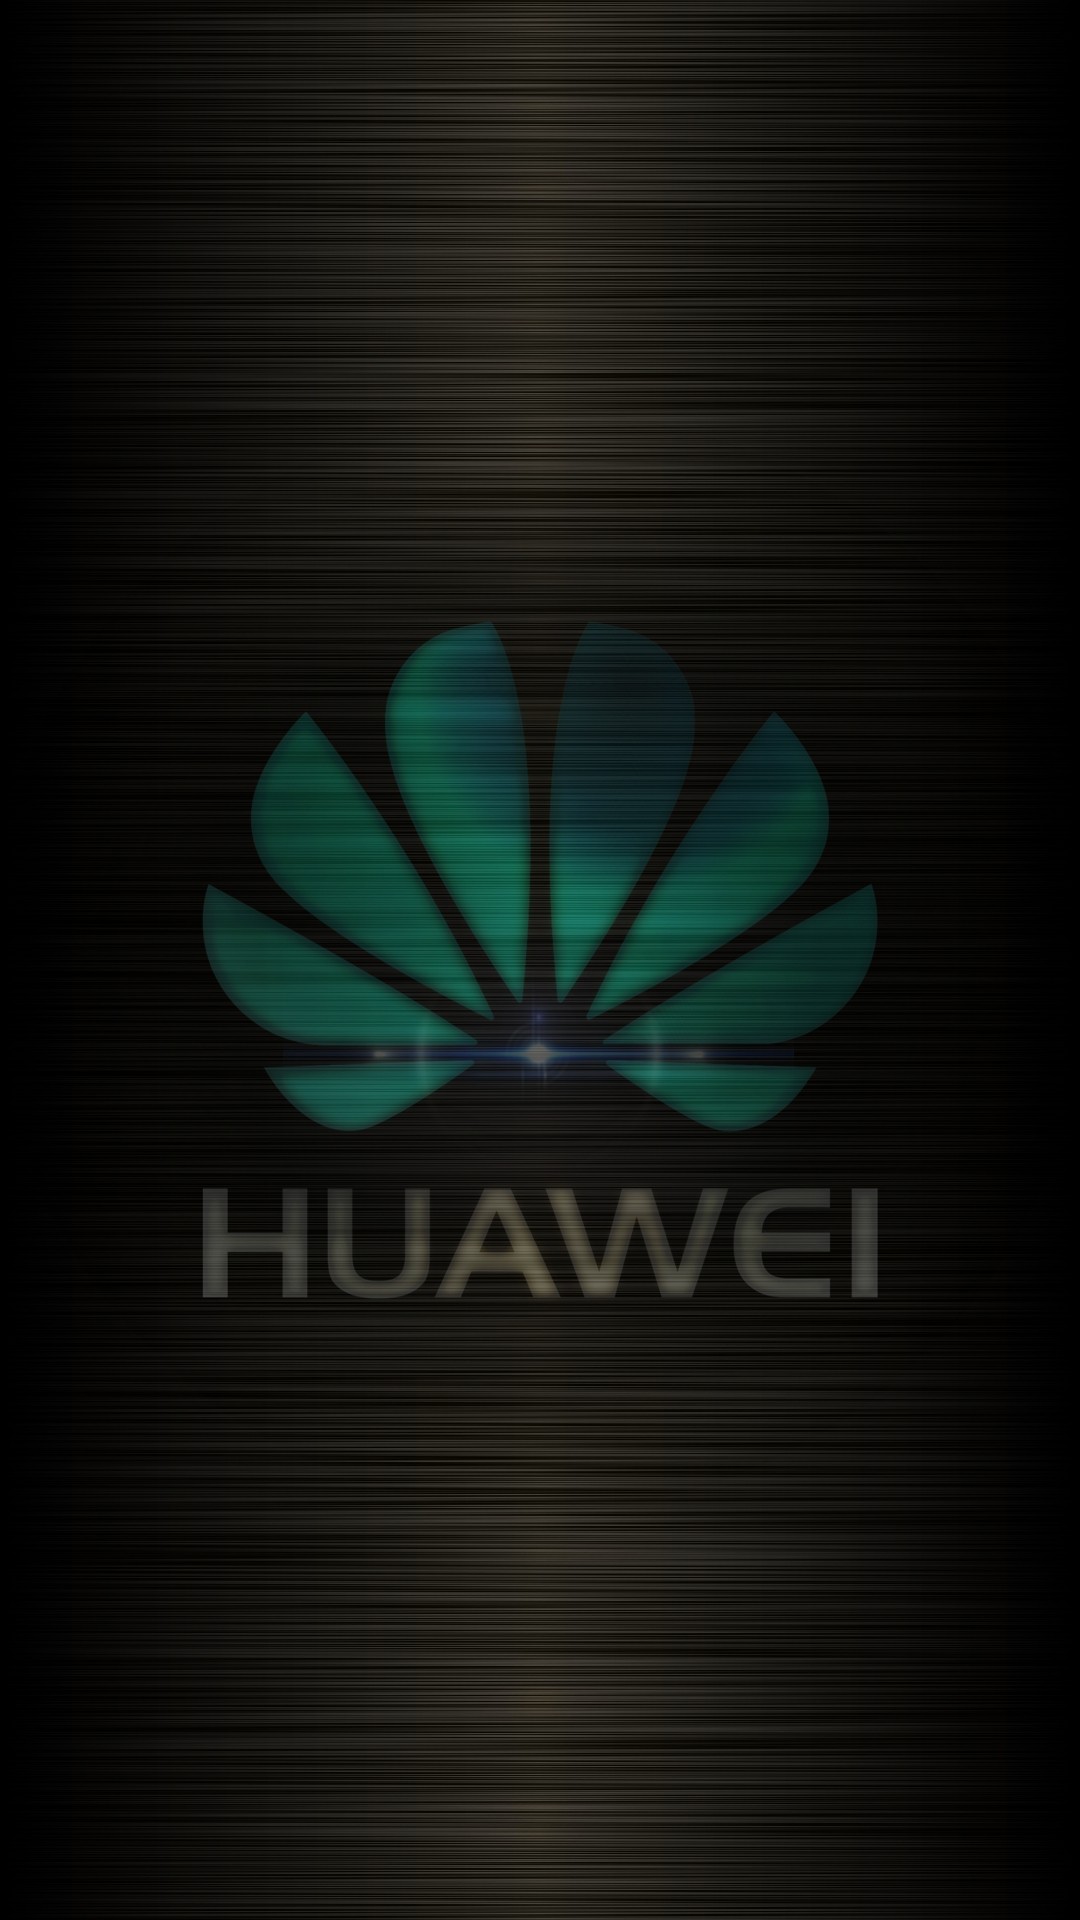  Huawei  Wallpaper  1080x1920 